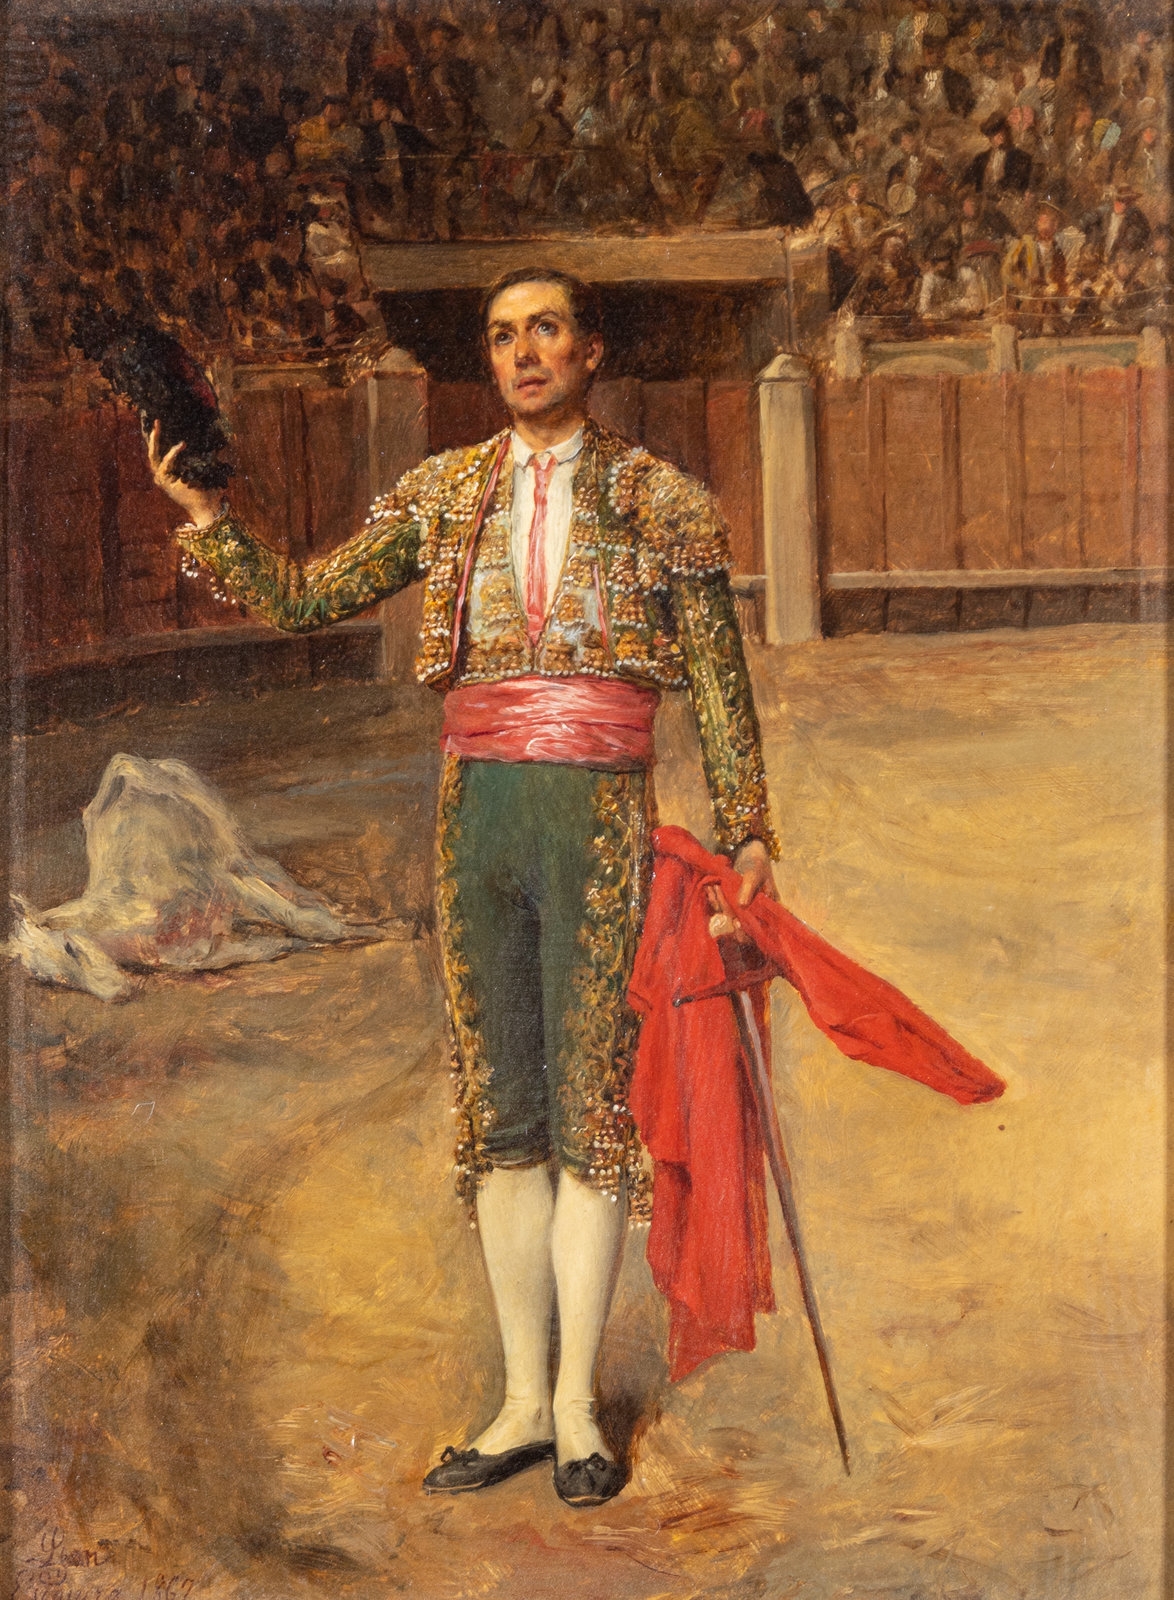 The Toreador by Ignacio de León y Escosura, 1867